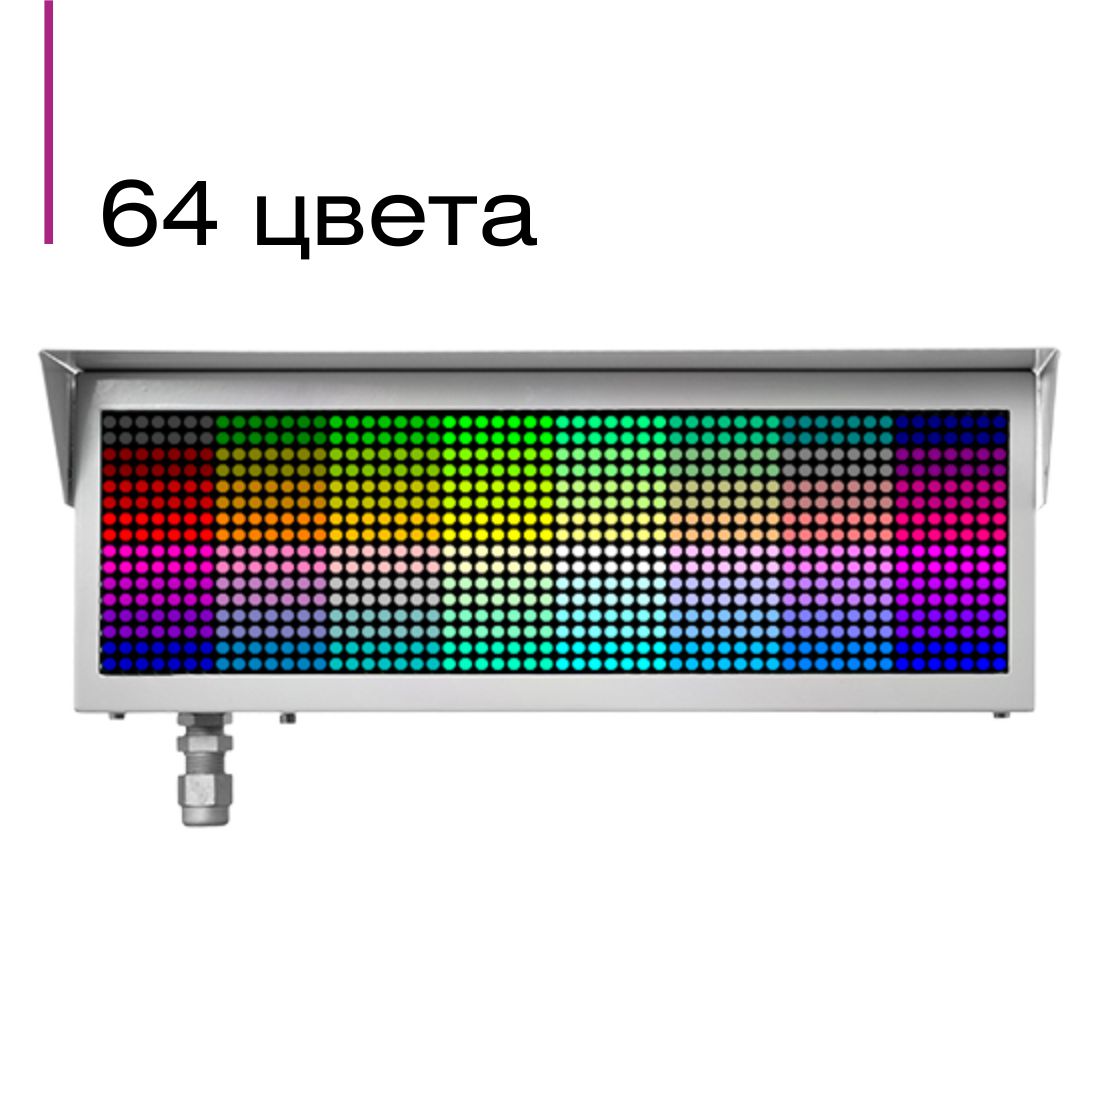 ЭКРАН-ИНФО-RGB-a-О комбинированный адресный